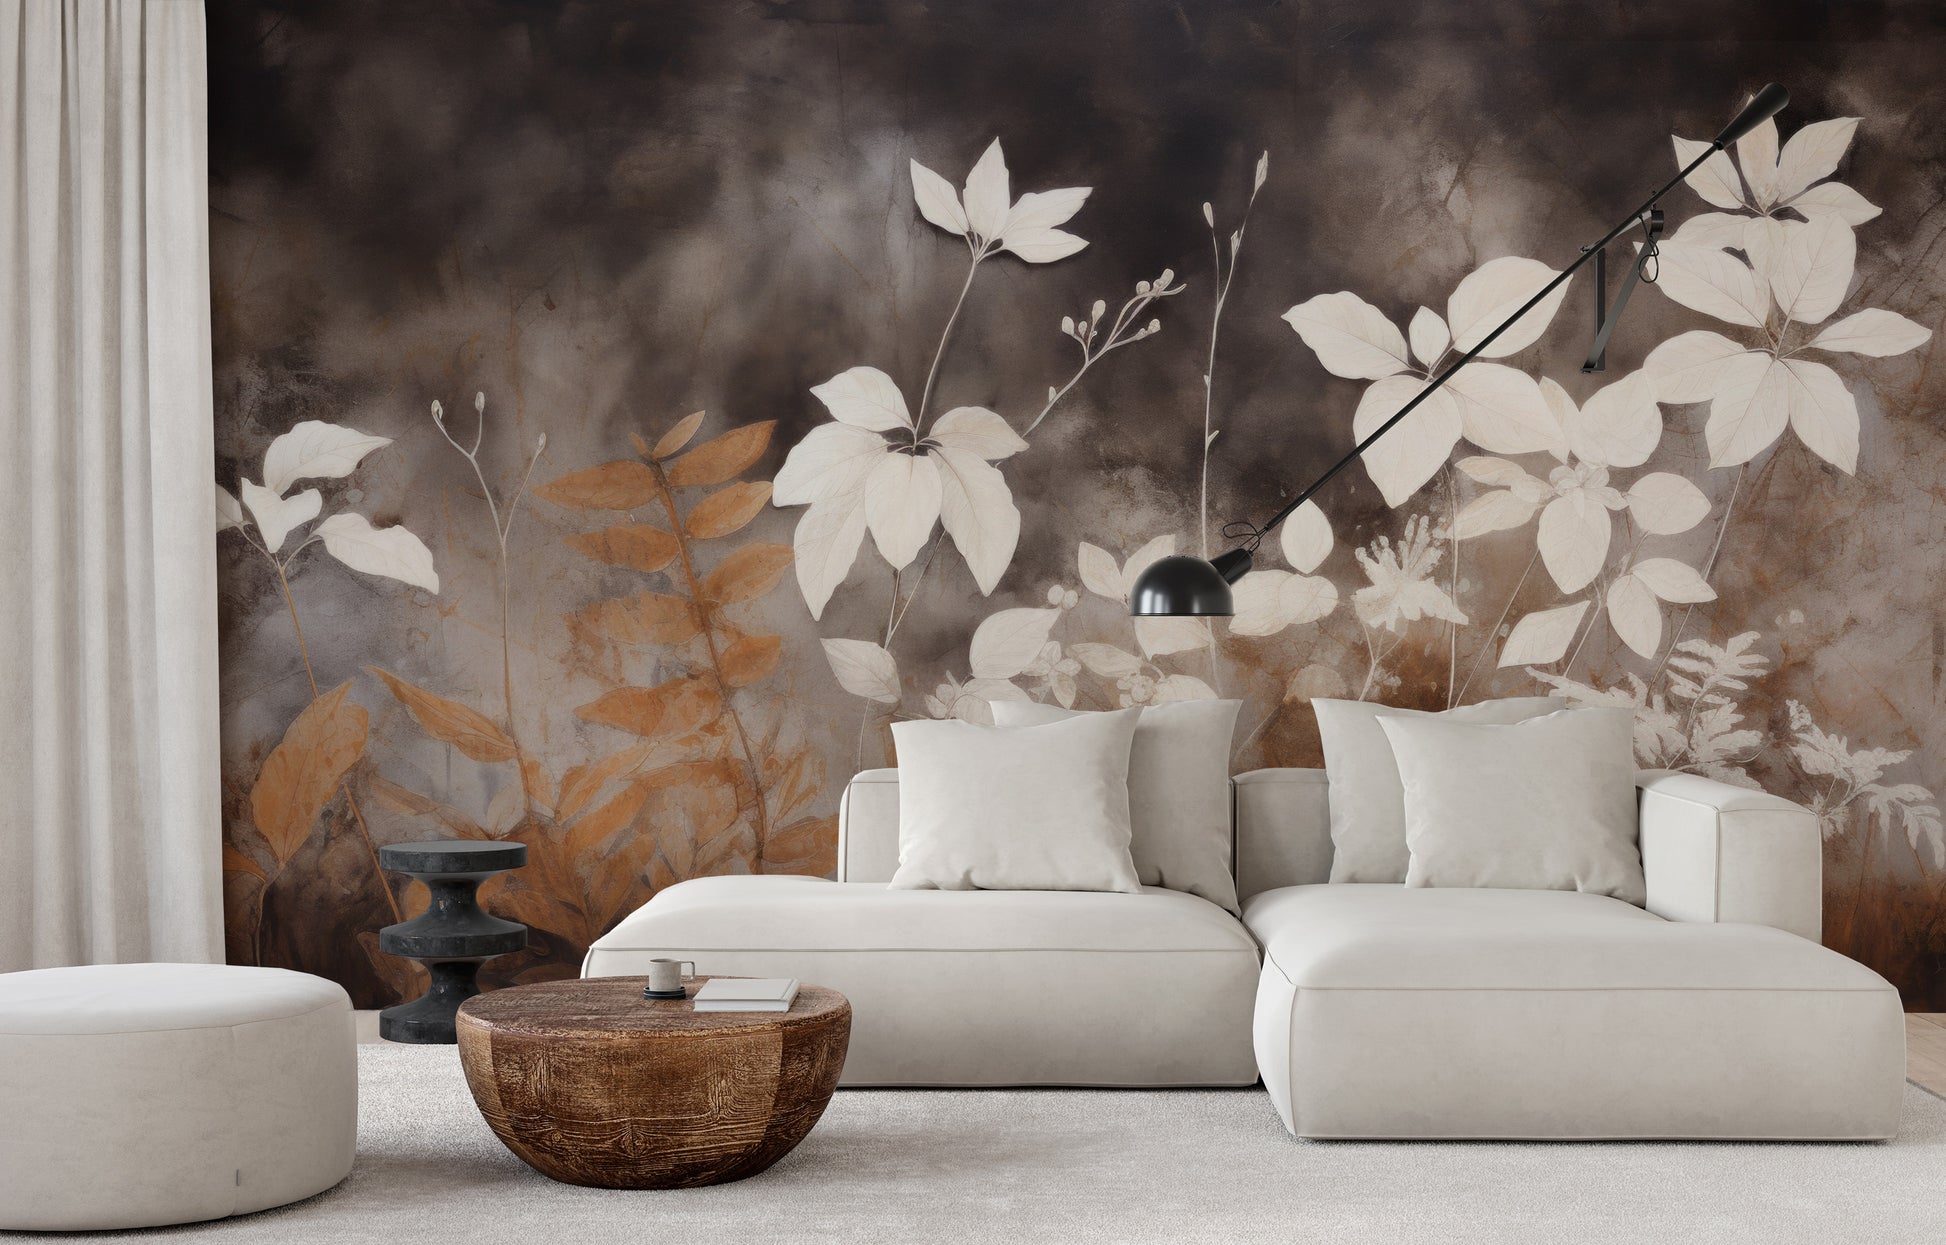 Fototapeta malowana o nazwie Autumnal Serenity pokazana w aranżacji wnętrza.